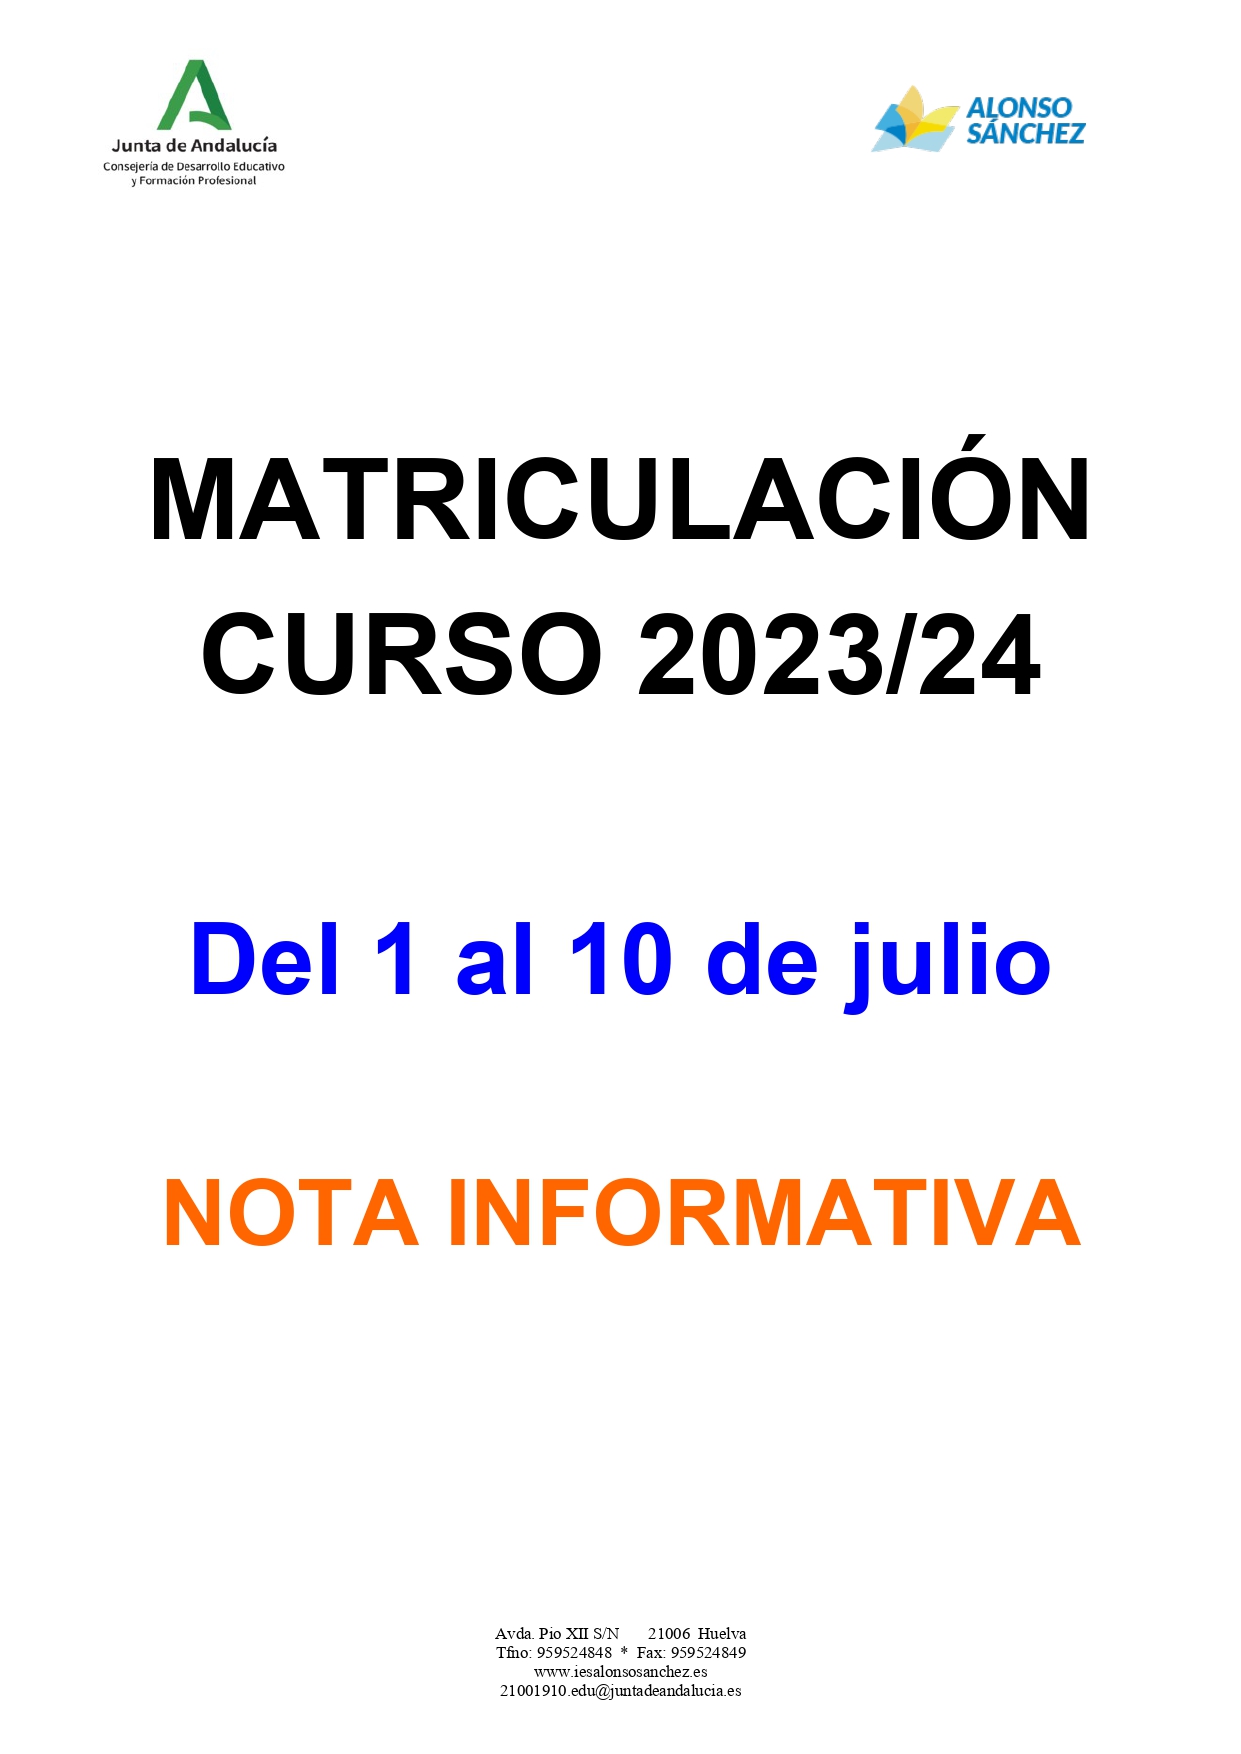 Matriculacion curso 2023/24